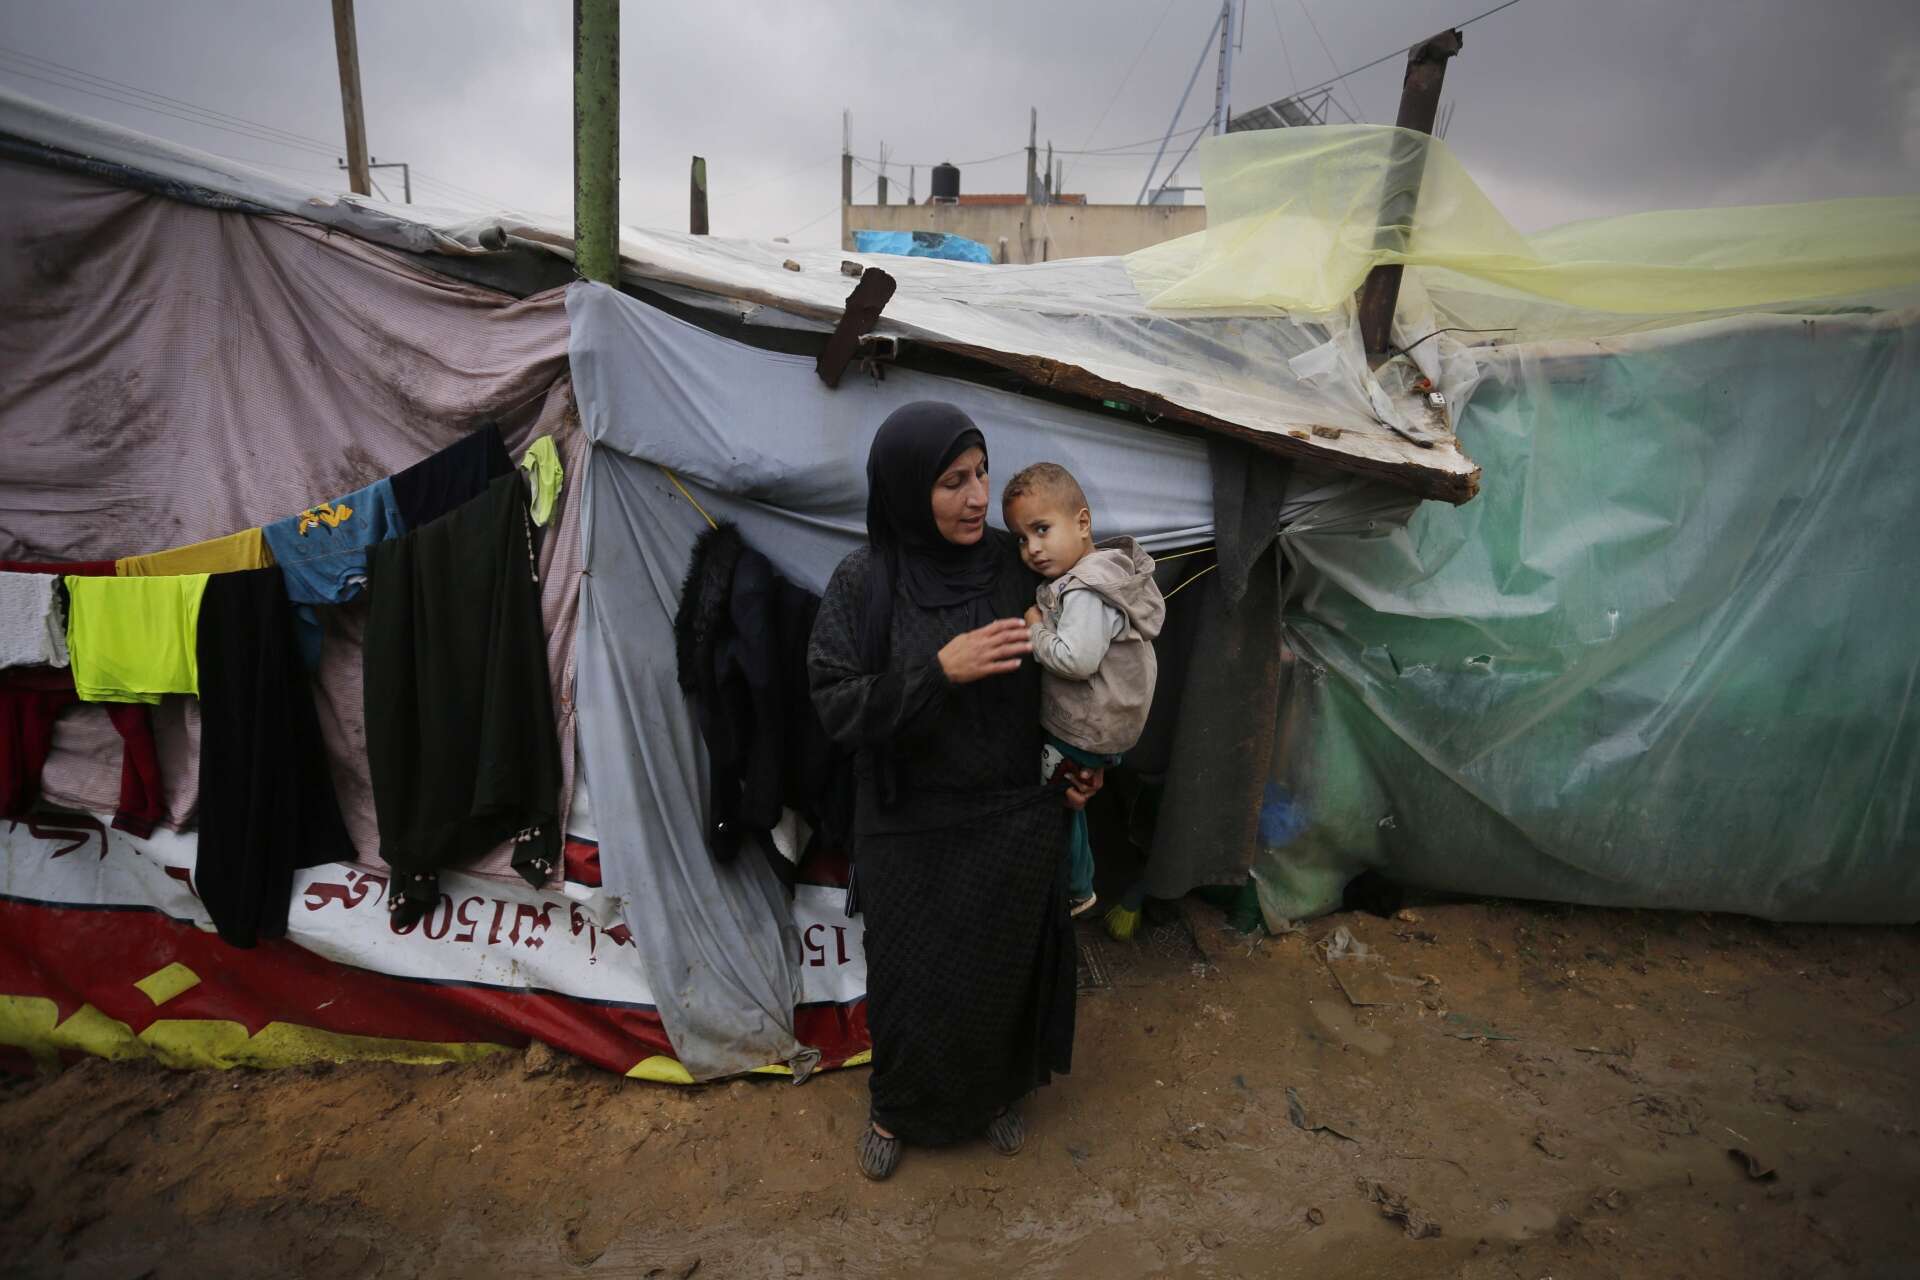 가자 지구의 임시 대피소 밖에서 한 여성이 어린 아이를 안고 있습니다.